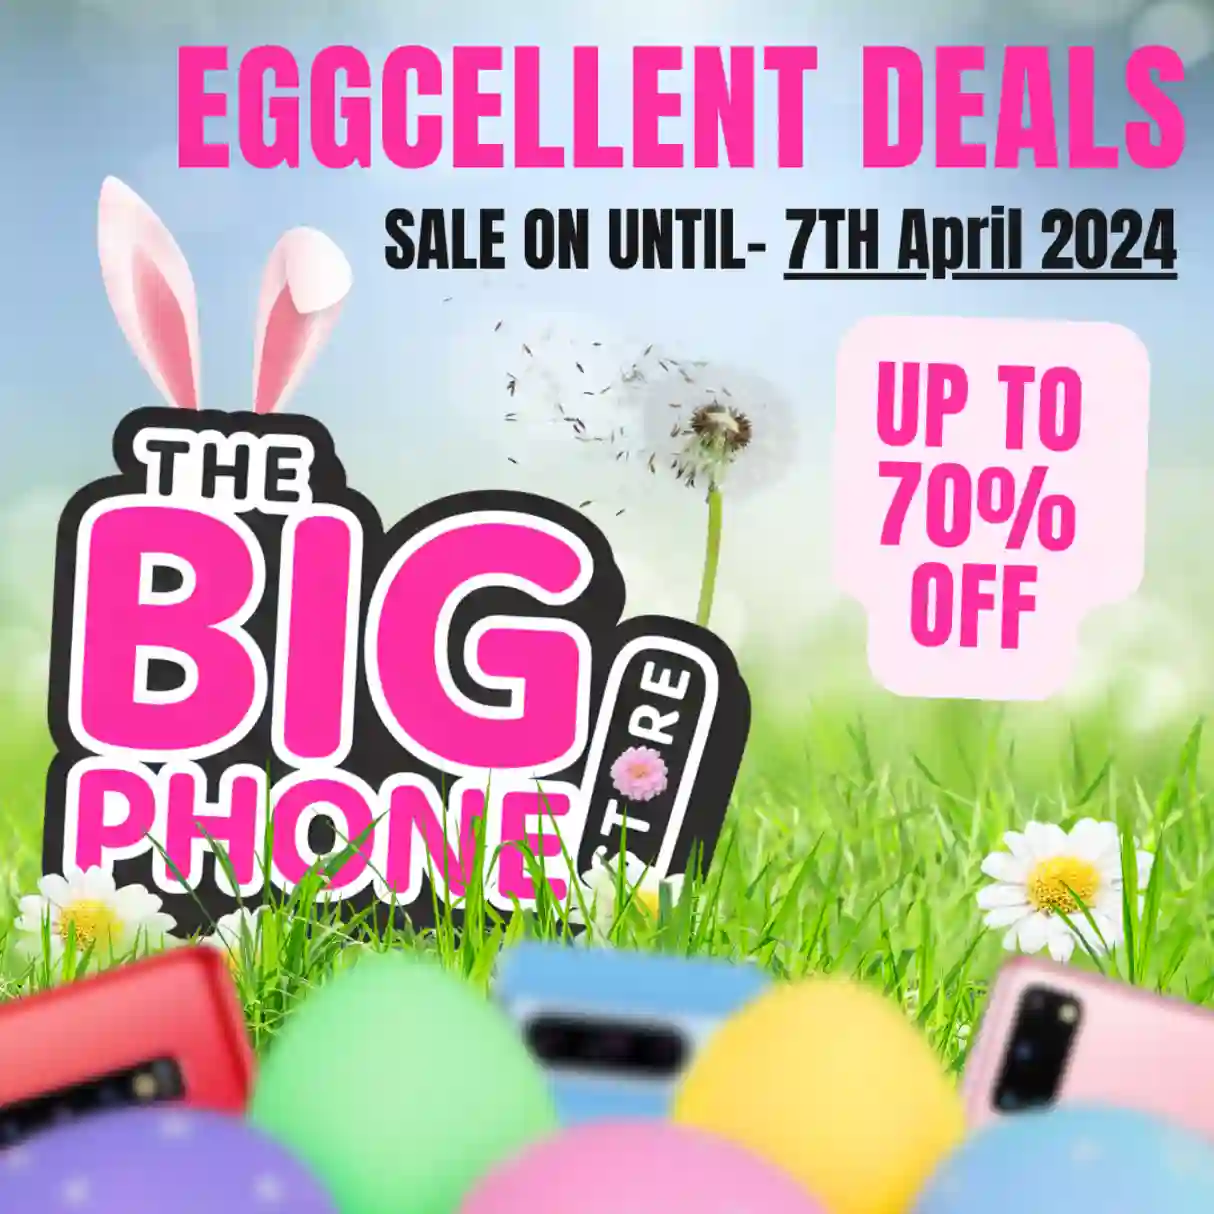 Easter eggcellent deals. Up to 70% off. Sale on until 7th April 2024.